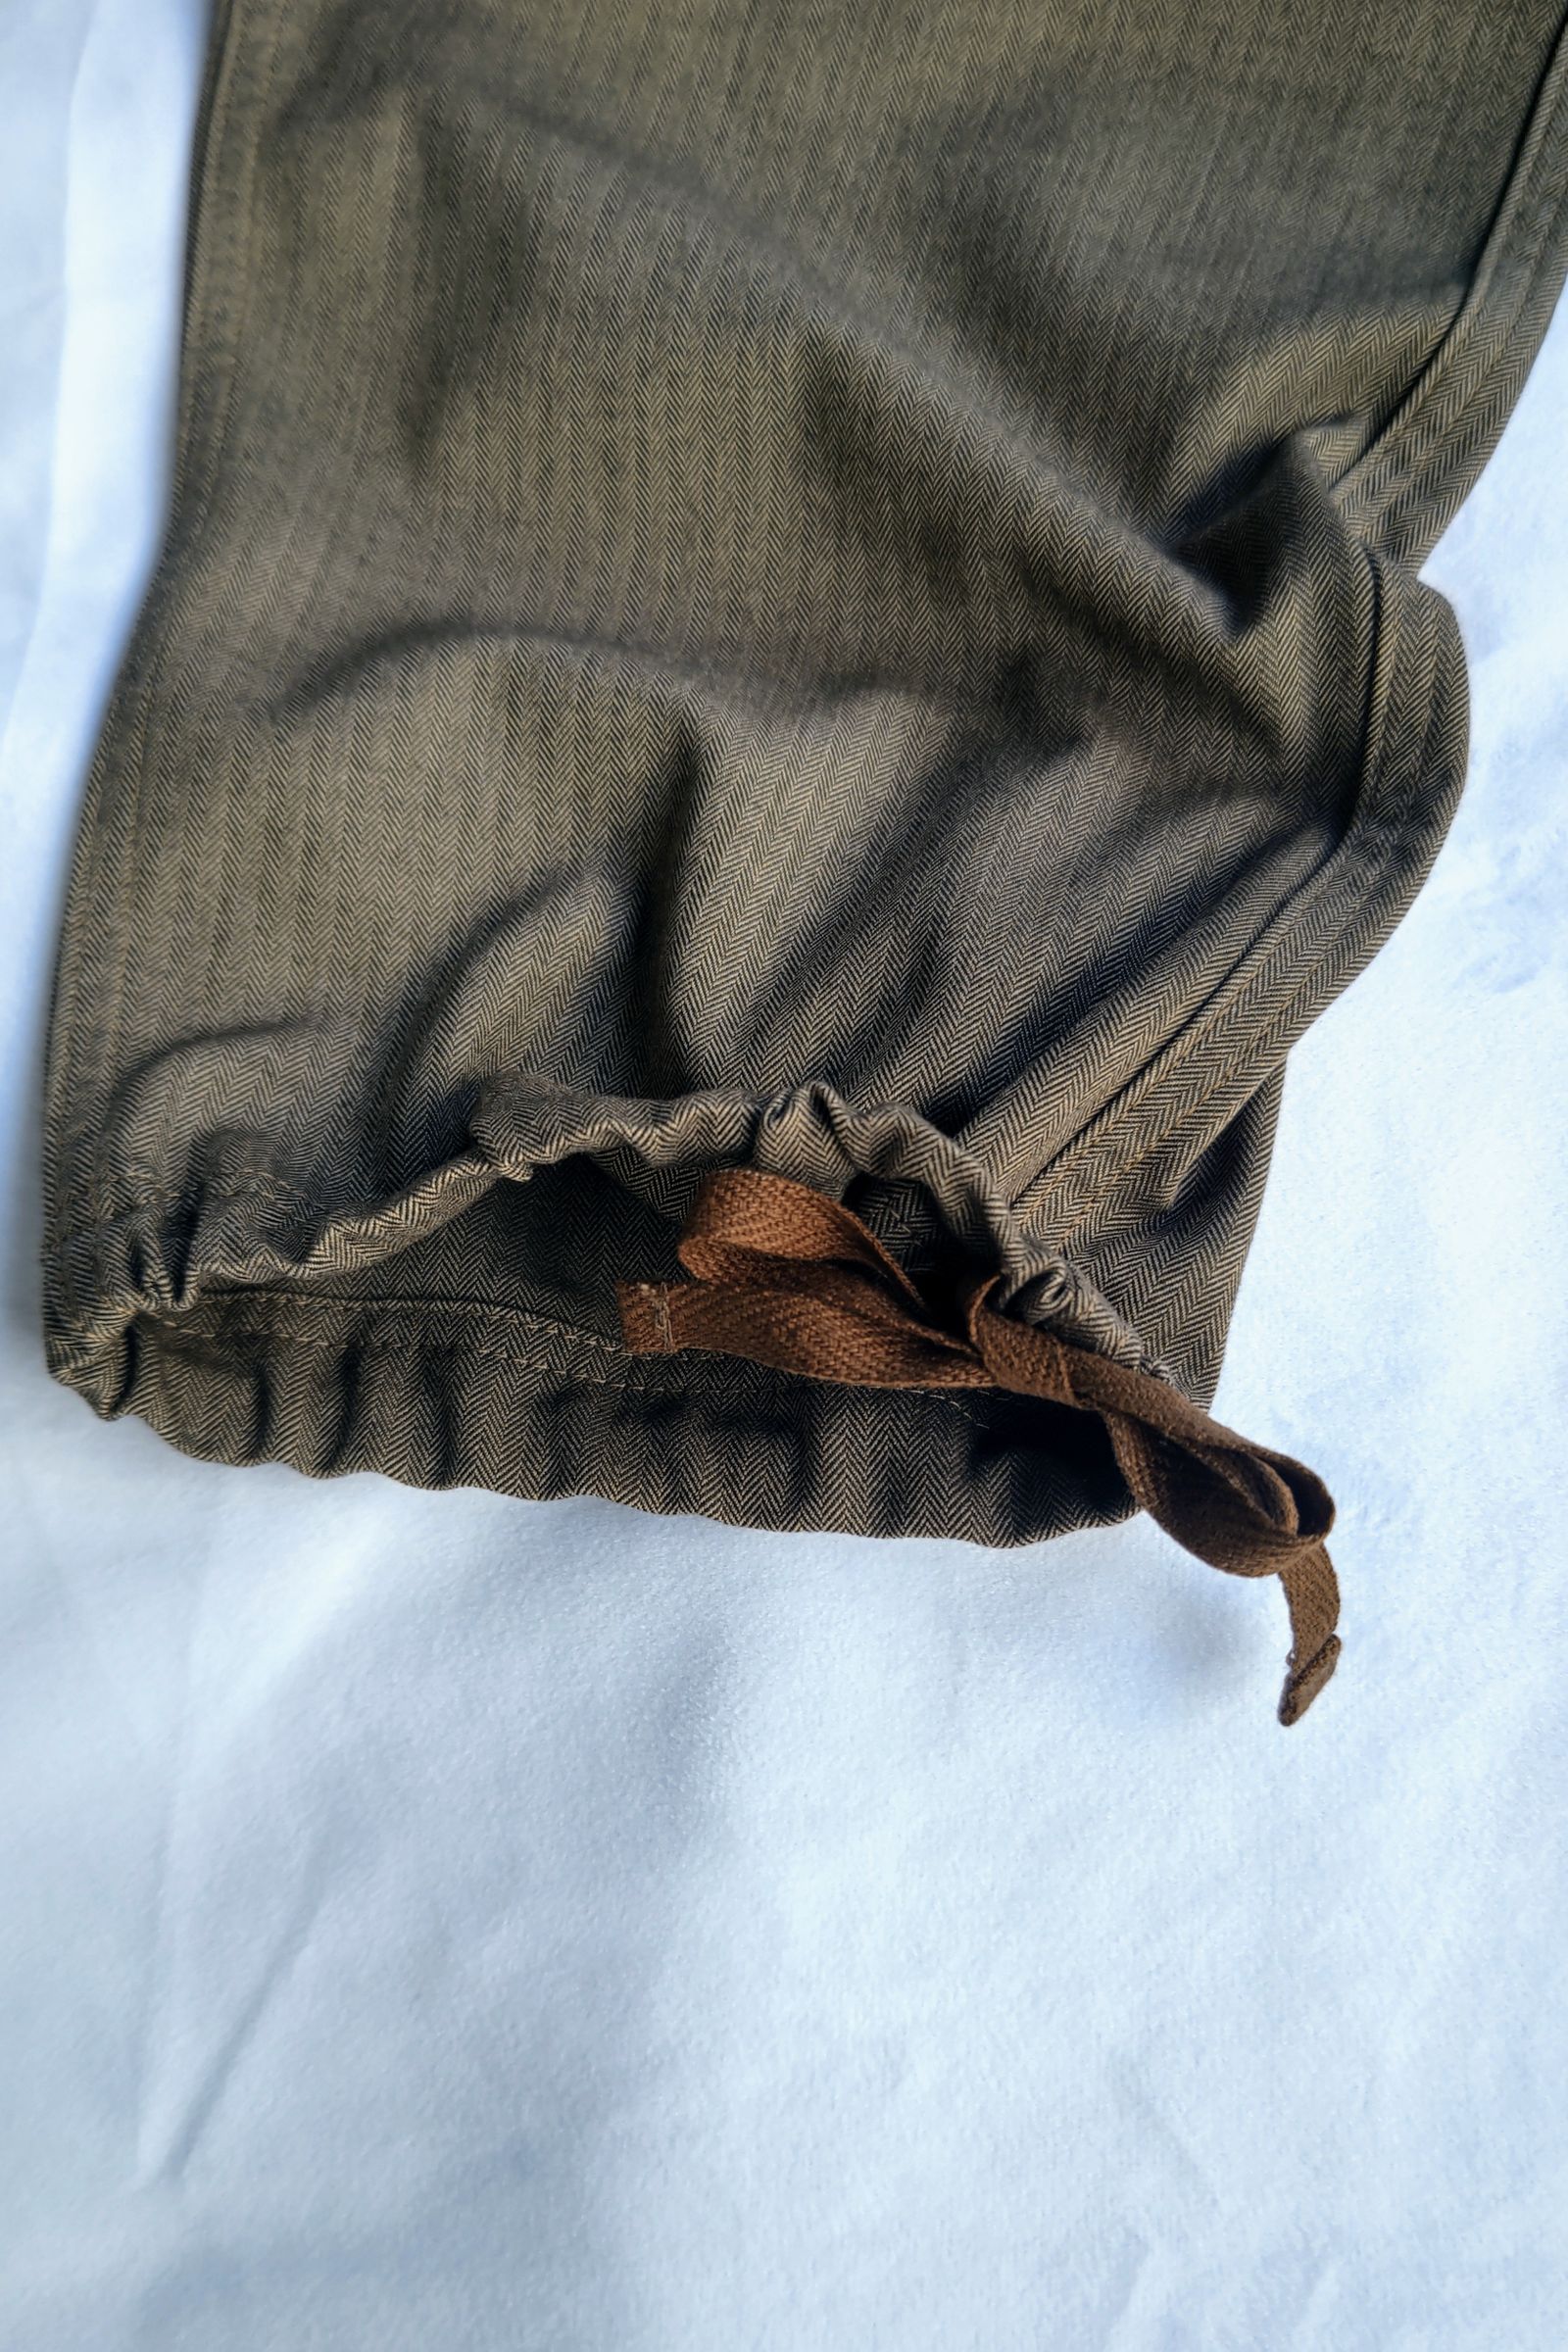 White Mountaineering - knee tuck tweed pants -brown- 22aw men